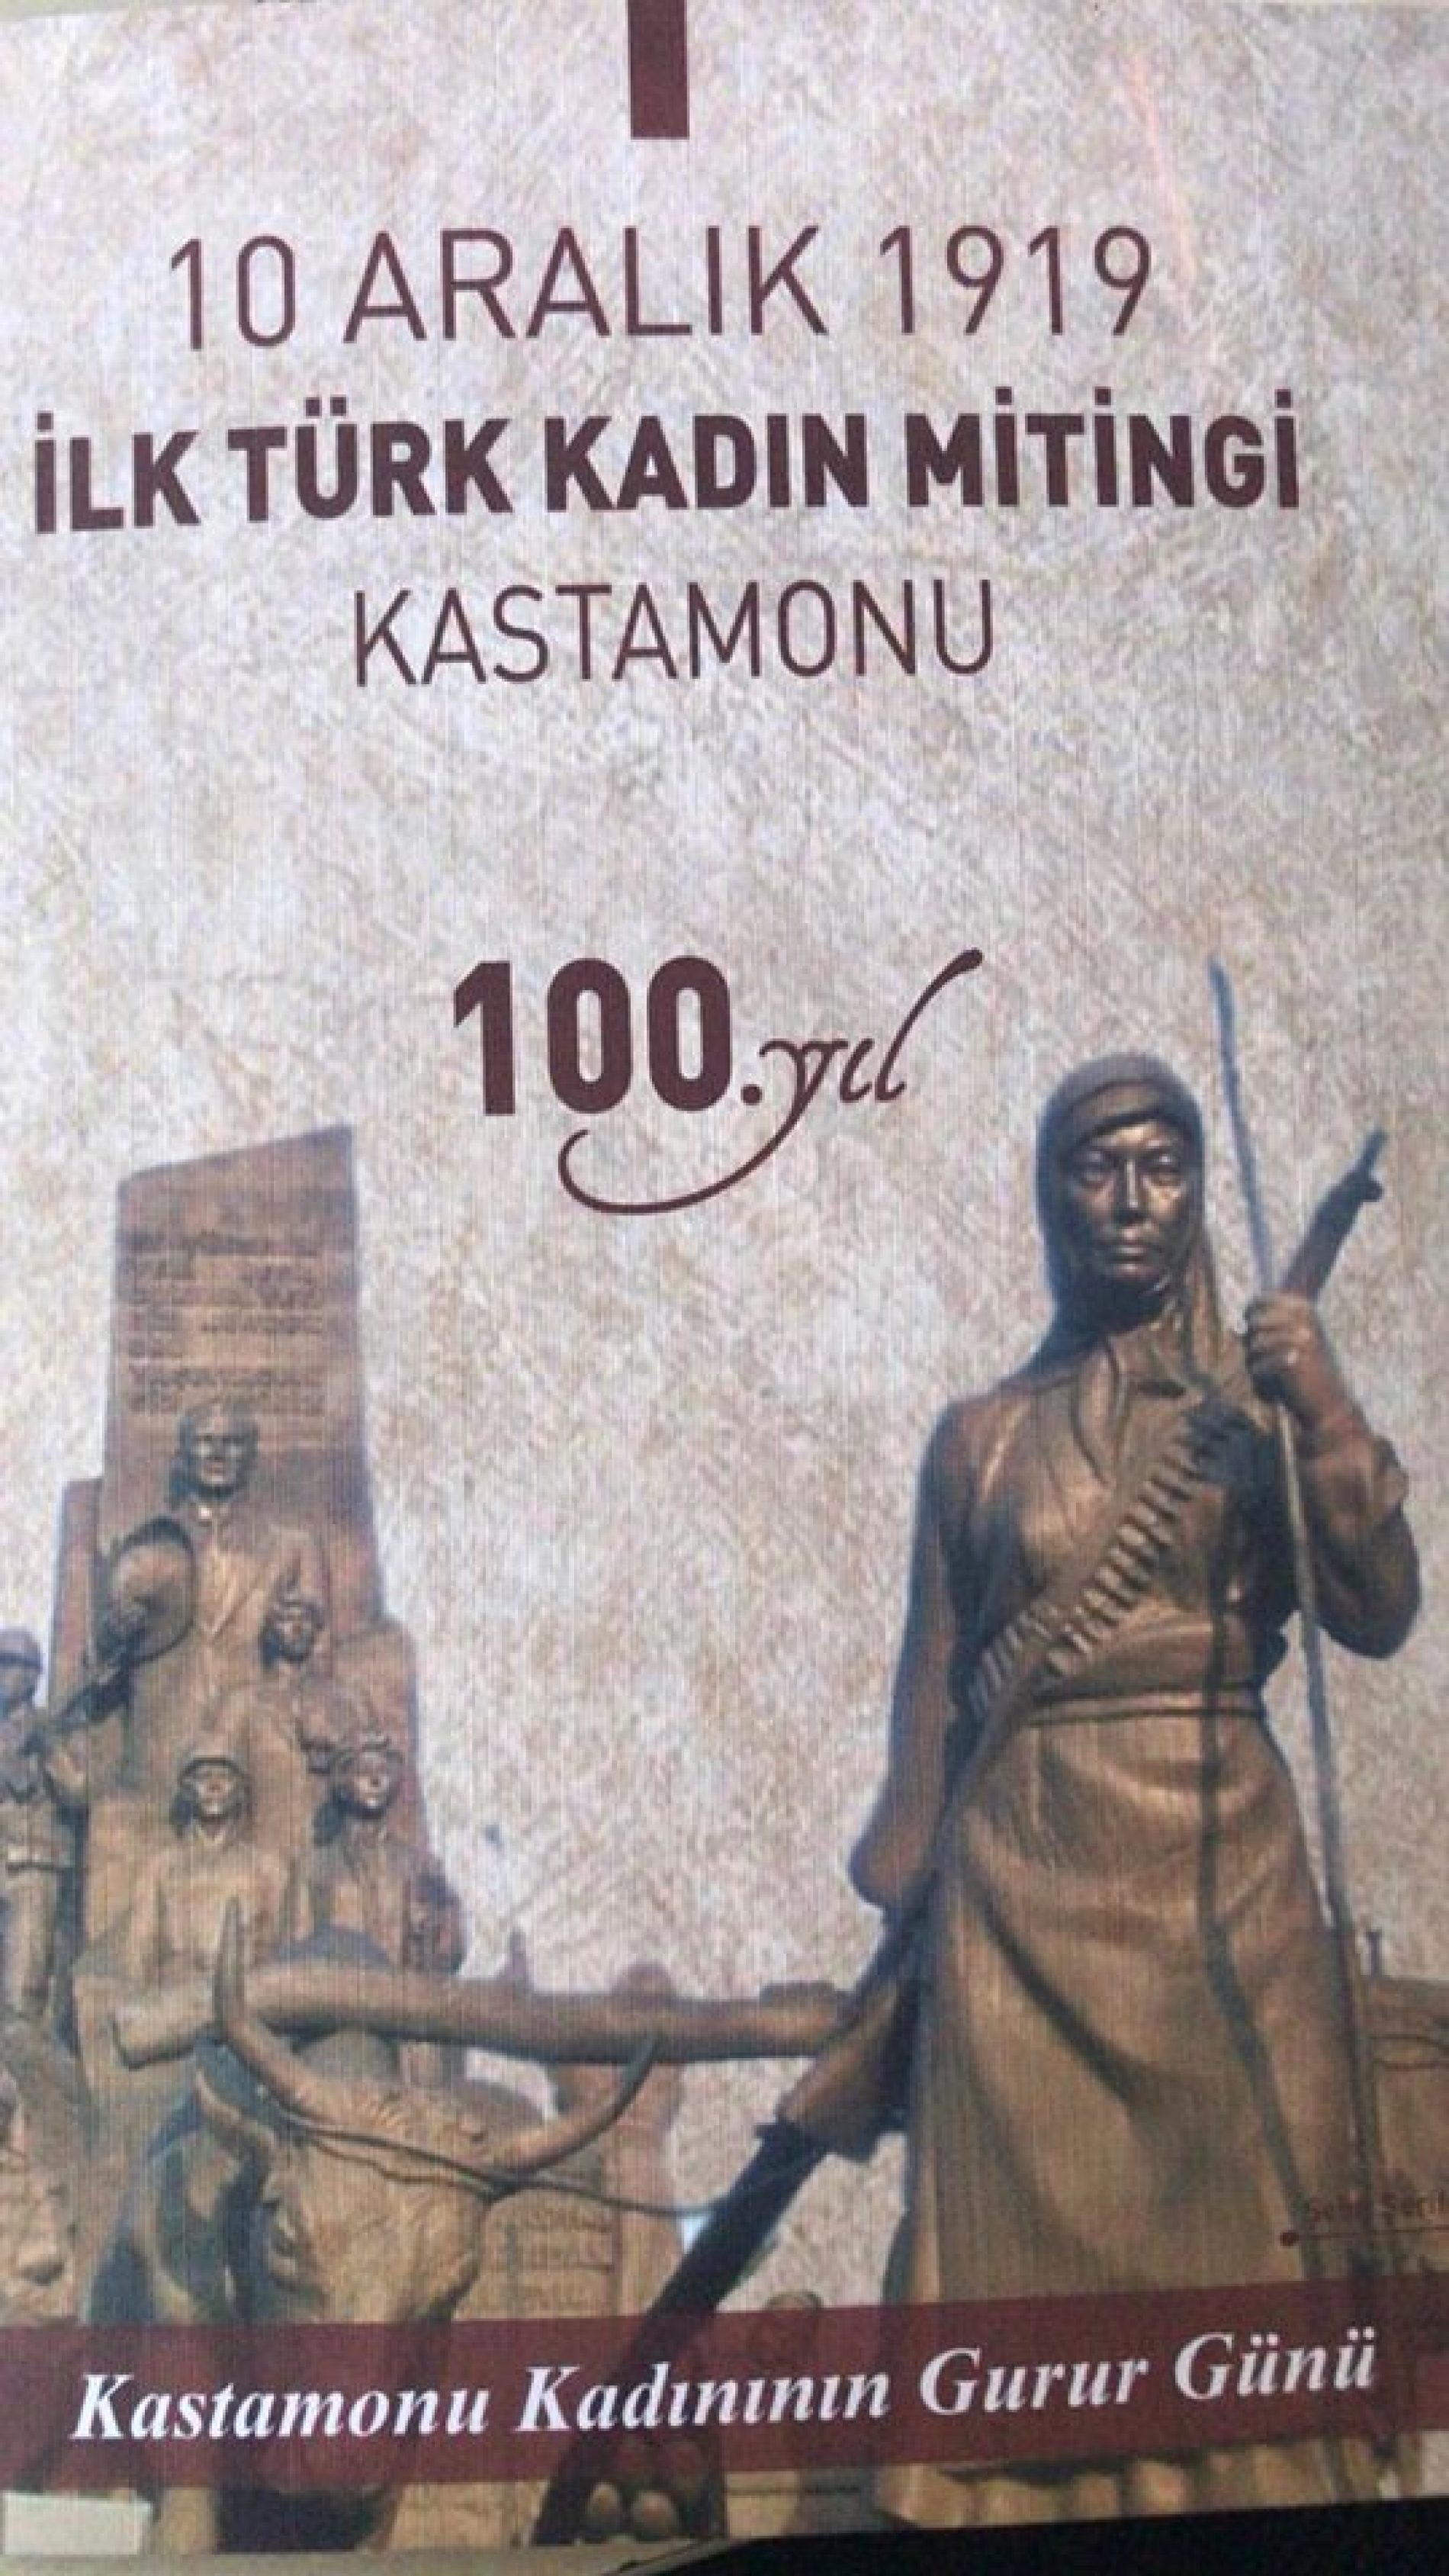 TYSD Kastamonu Şubemiz’den İlk Türk Kadın Mitingi’nin 100. Yılı Etkinliği